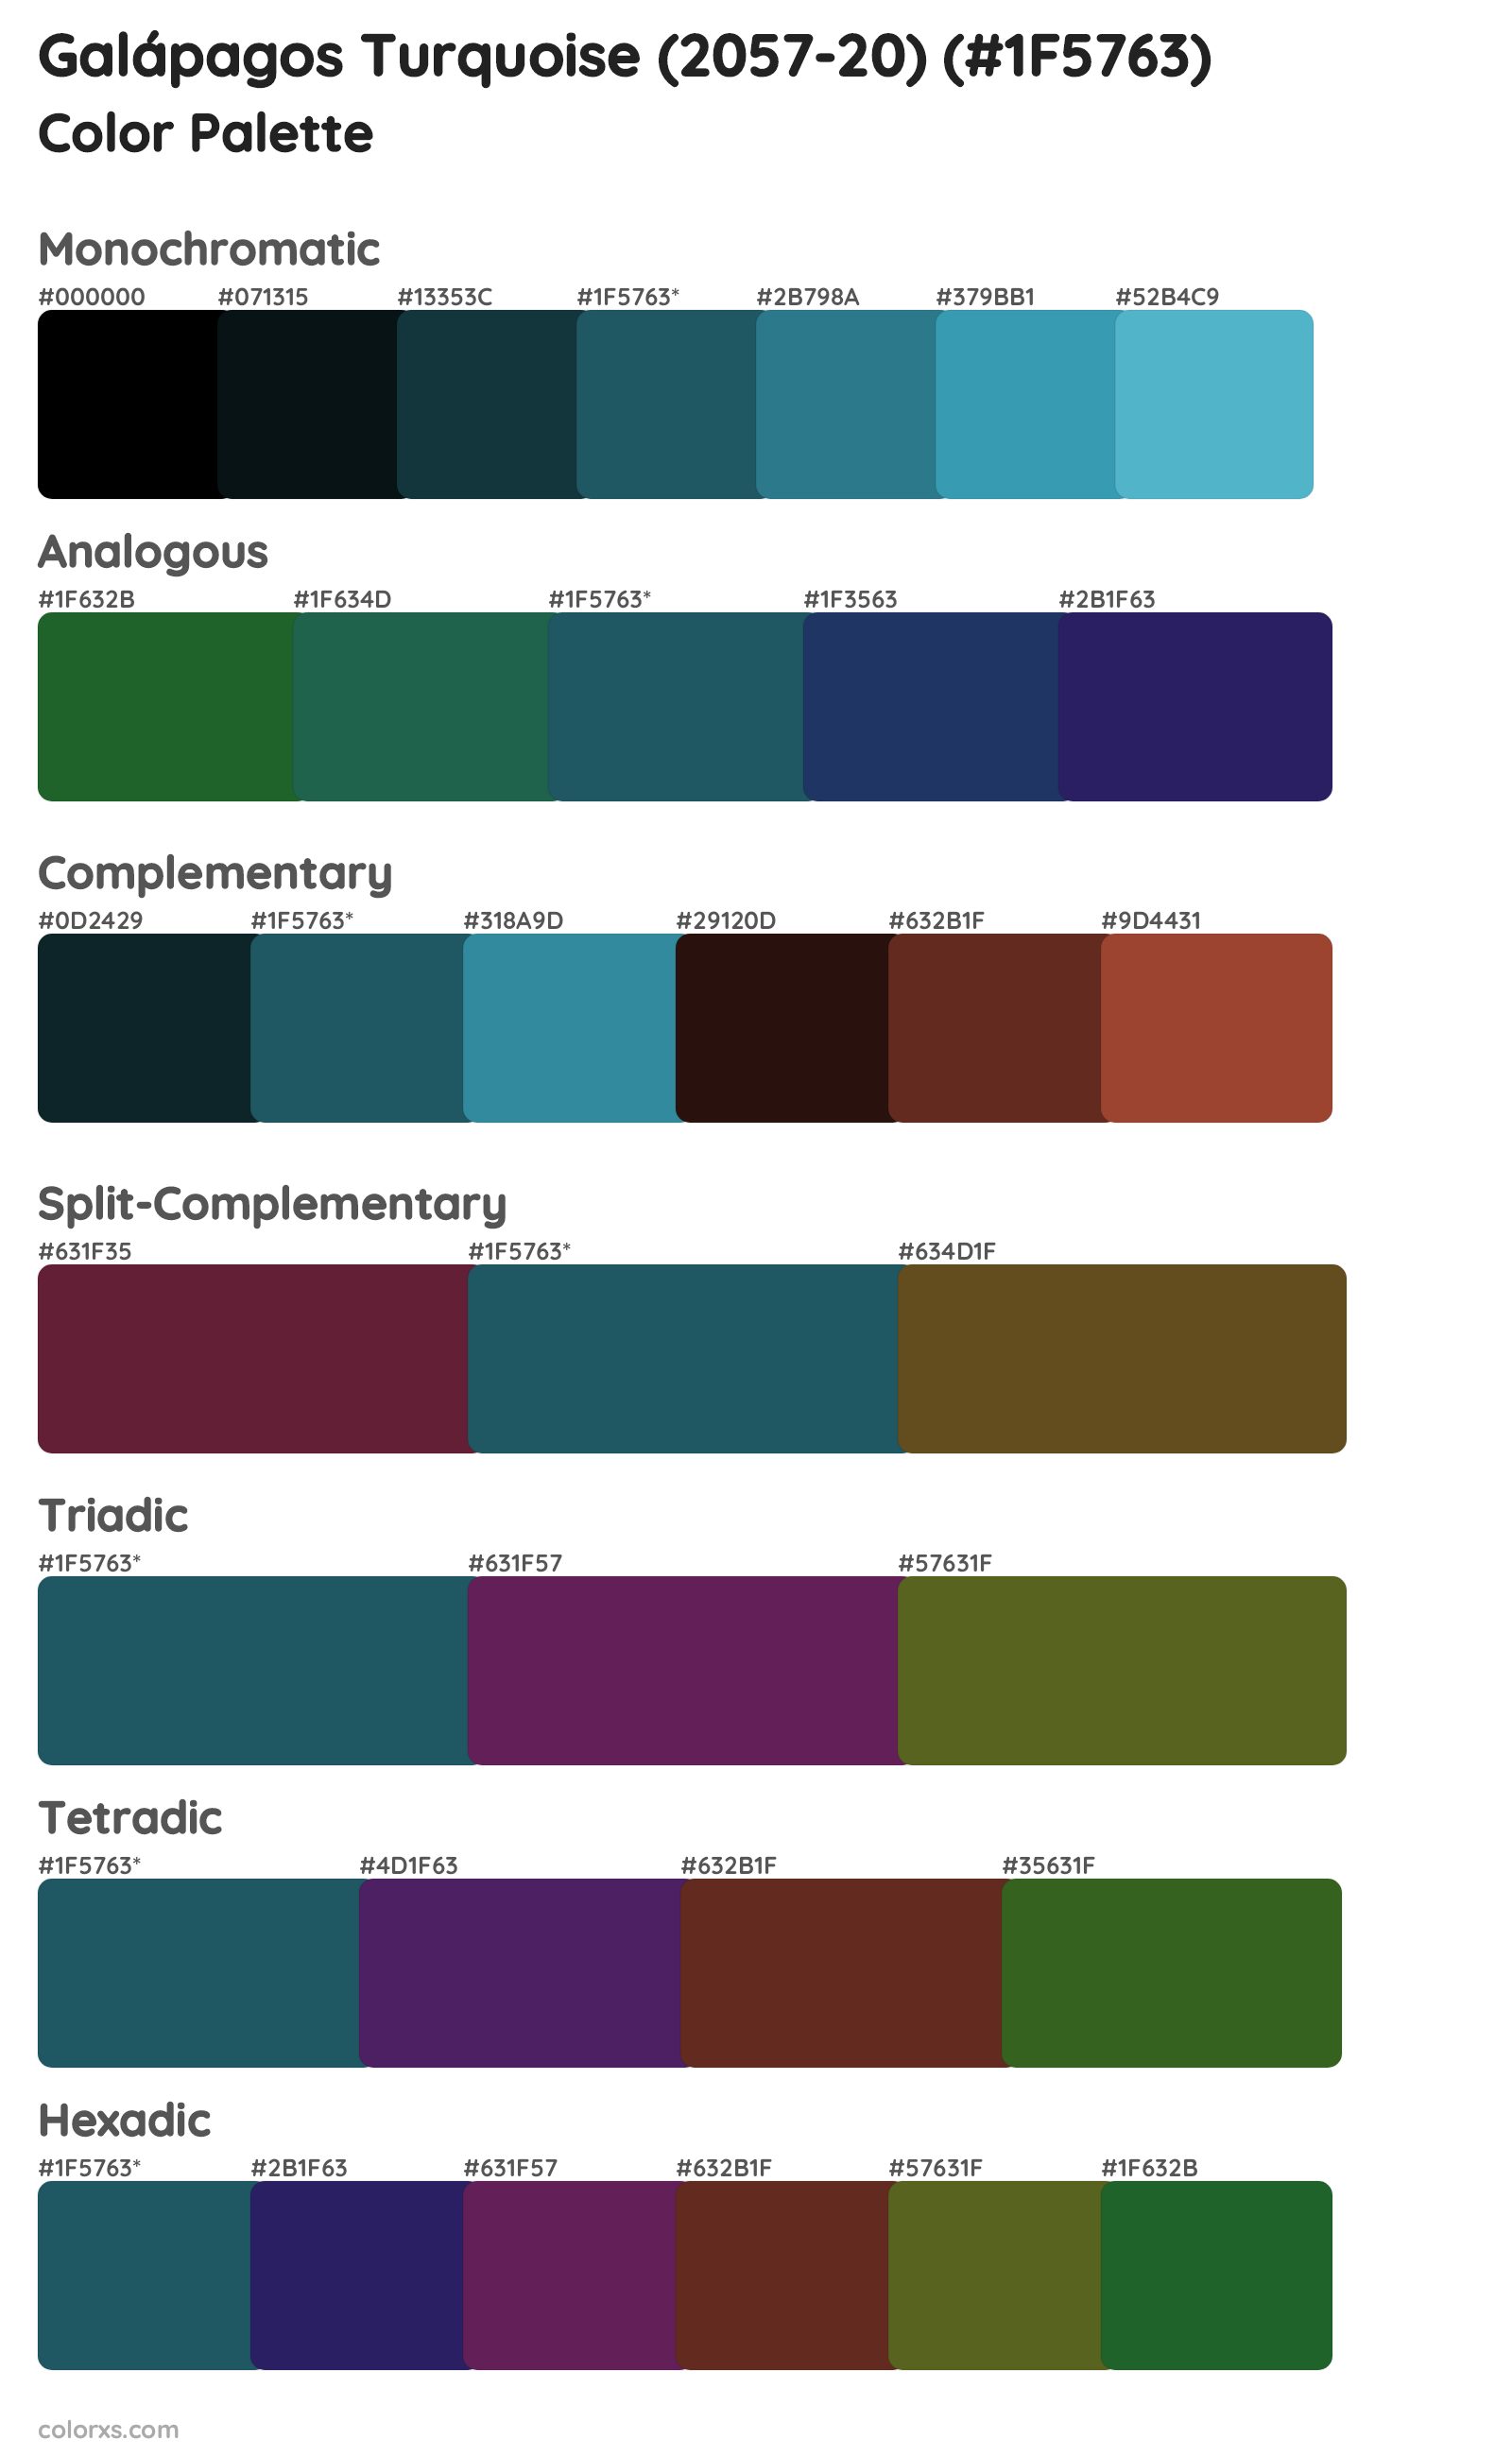 Galápagos Turquoise (2057-20) Color Scheme Palettes